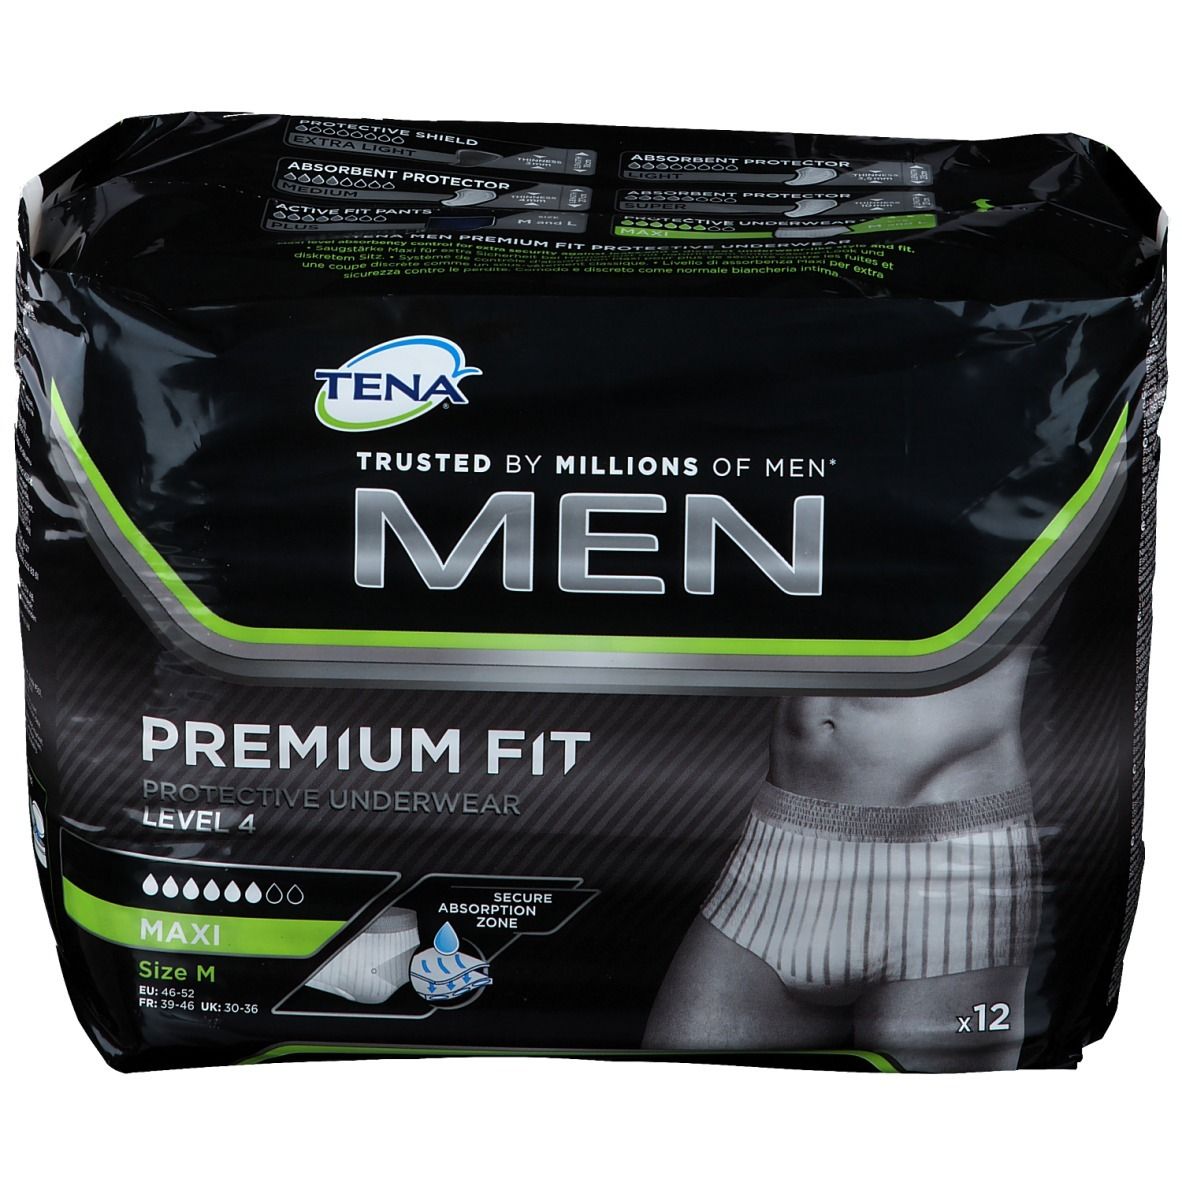 TENA® MEN PREMIUM FIT Protective Underwear Level 4 Medium - shop ...